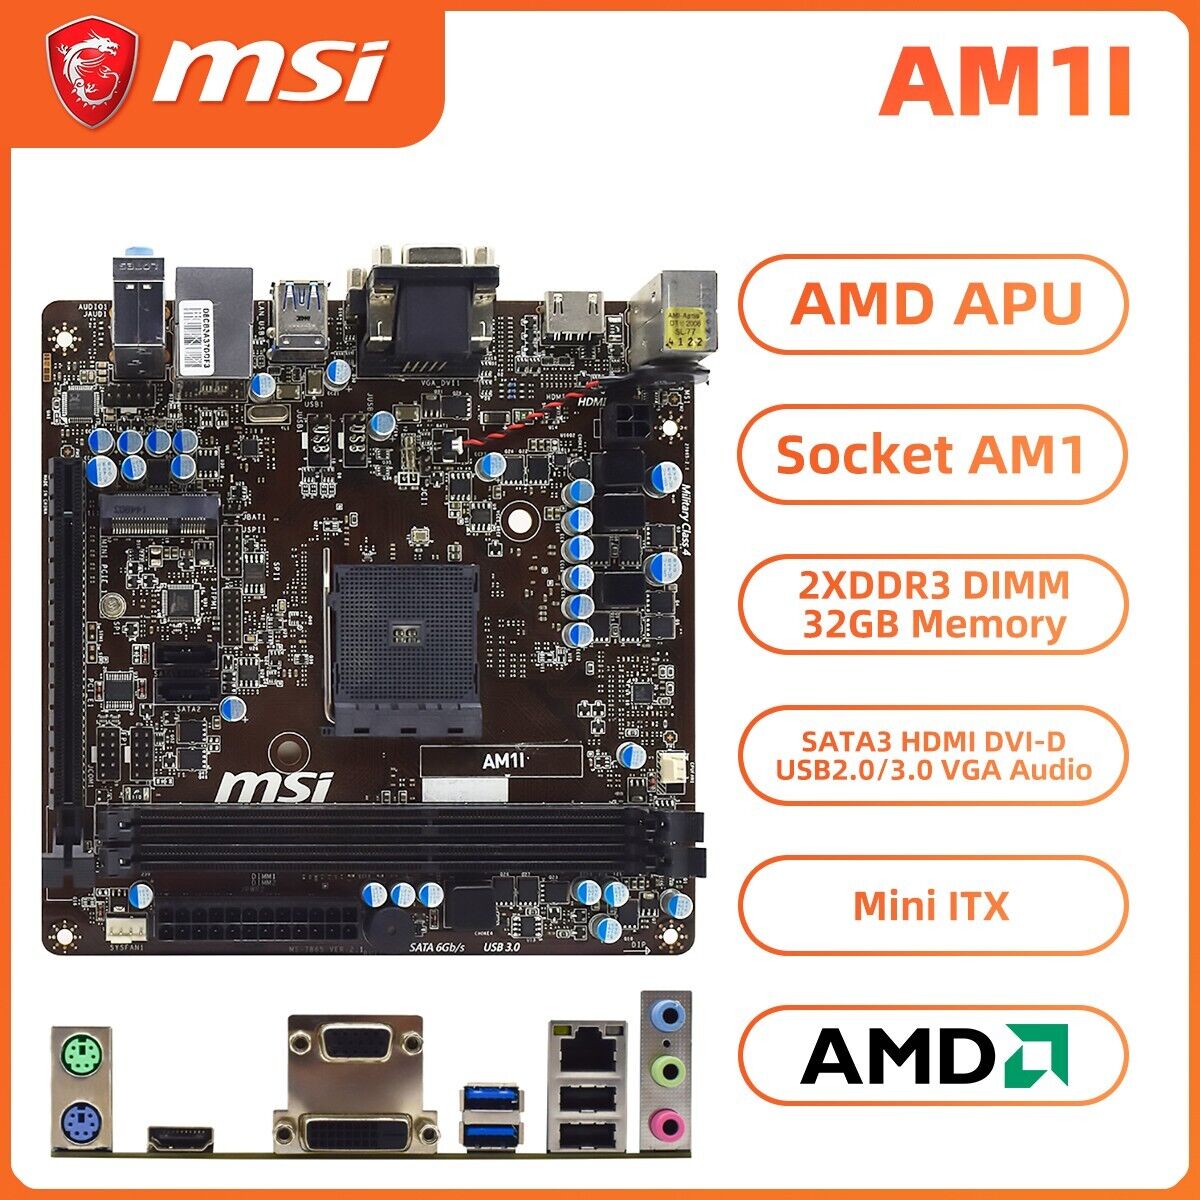 MSI AM1I Motherboard Mini-ITX AMD APU Socket AM1 DDR3 SATA3 HDMI DVI-D VGA+I/O